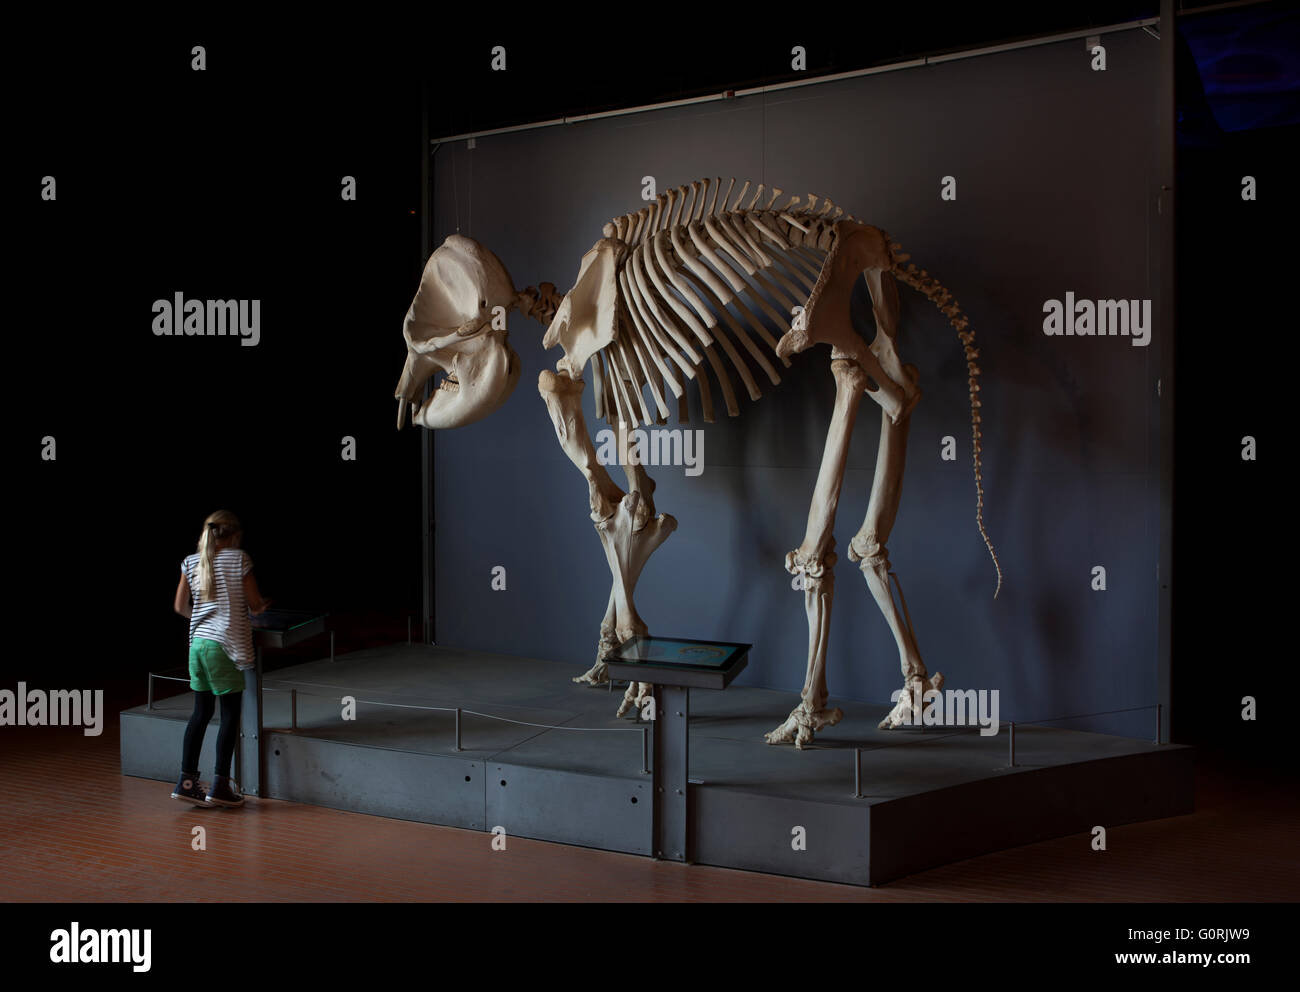 Das Elefantenhaus, Copenhagen Zoo. Skelett eines Dinosauriers auf einem Display. Frau stand vor dem Display. Stockfoto